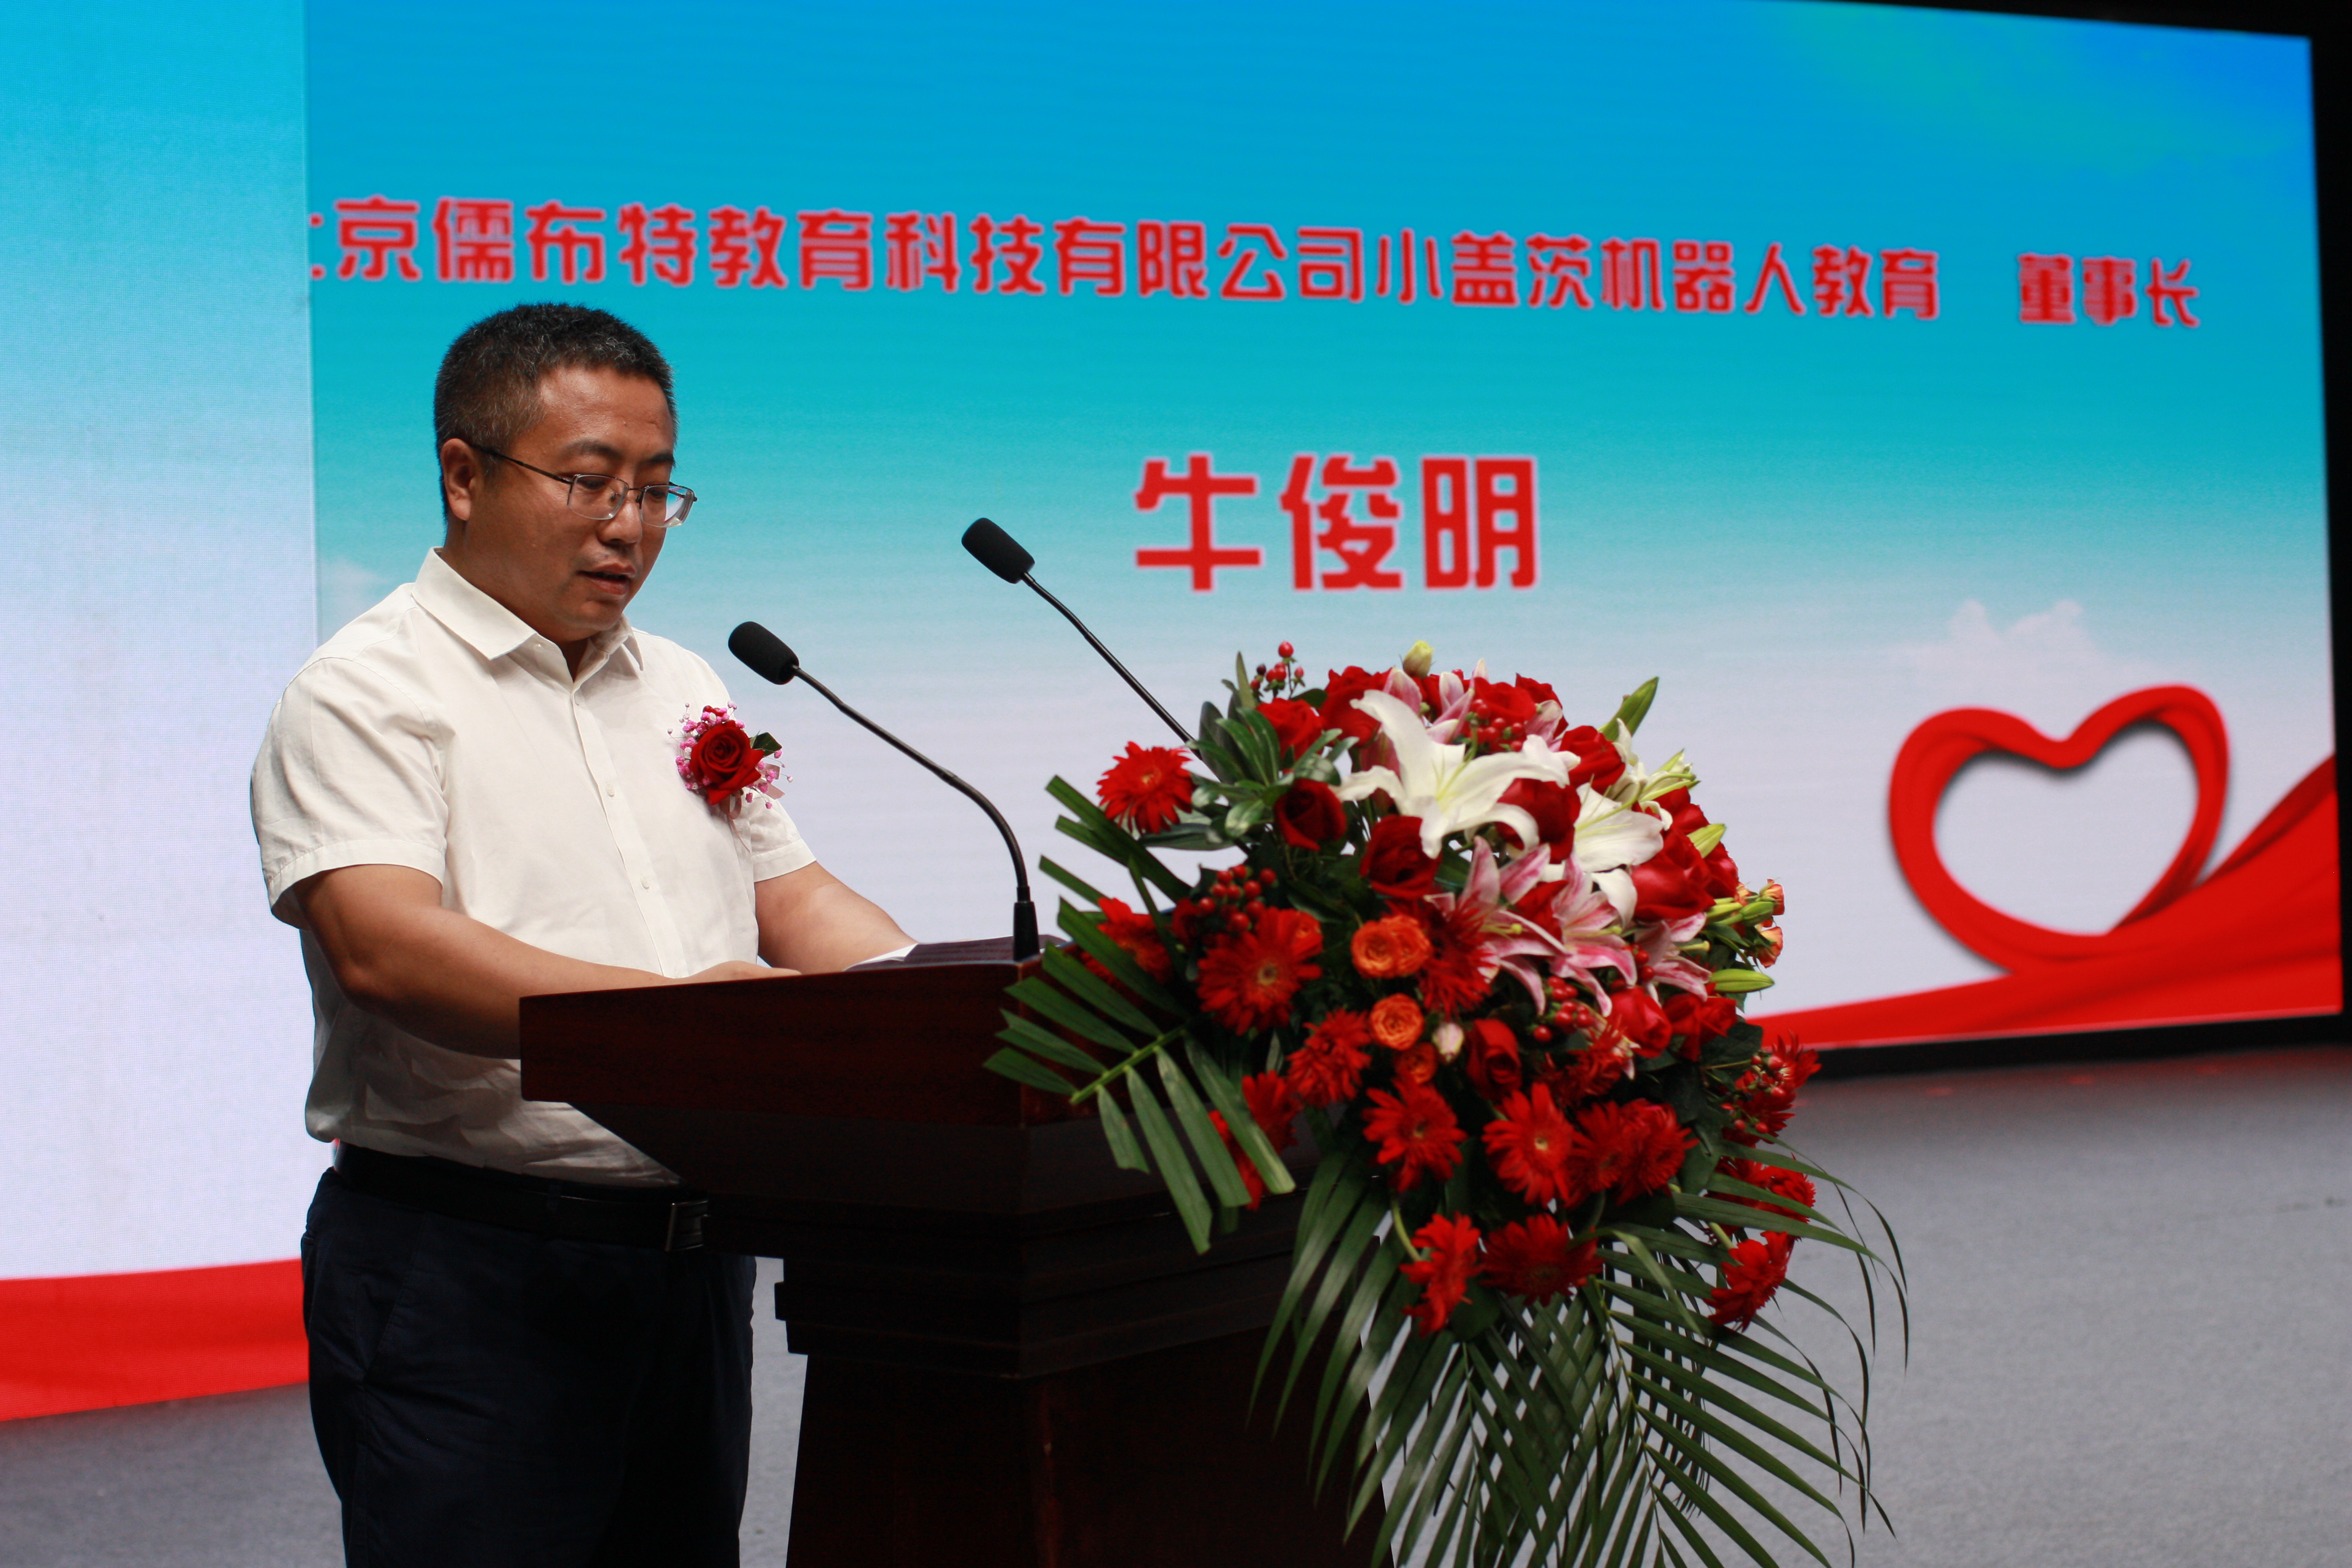 北京儒布特教育科技有限公司小盖茨机器人教育董事长牛俊明讲话